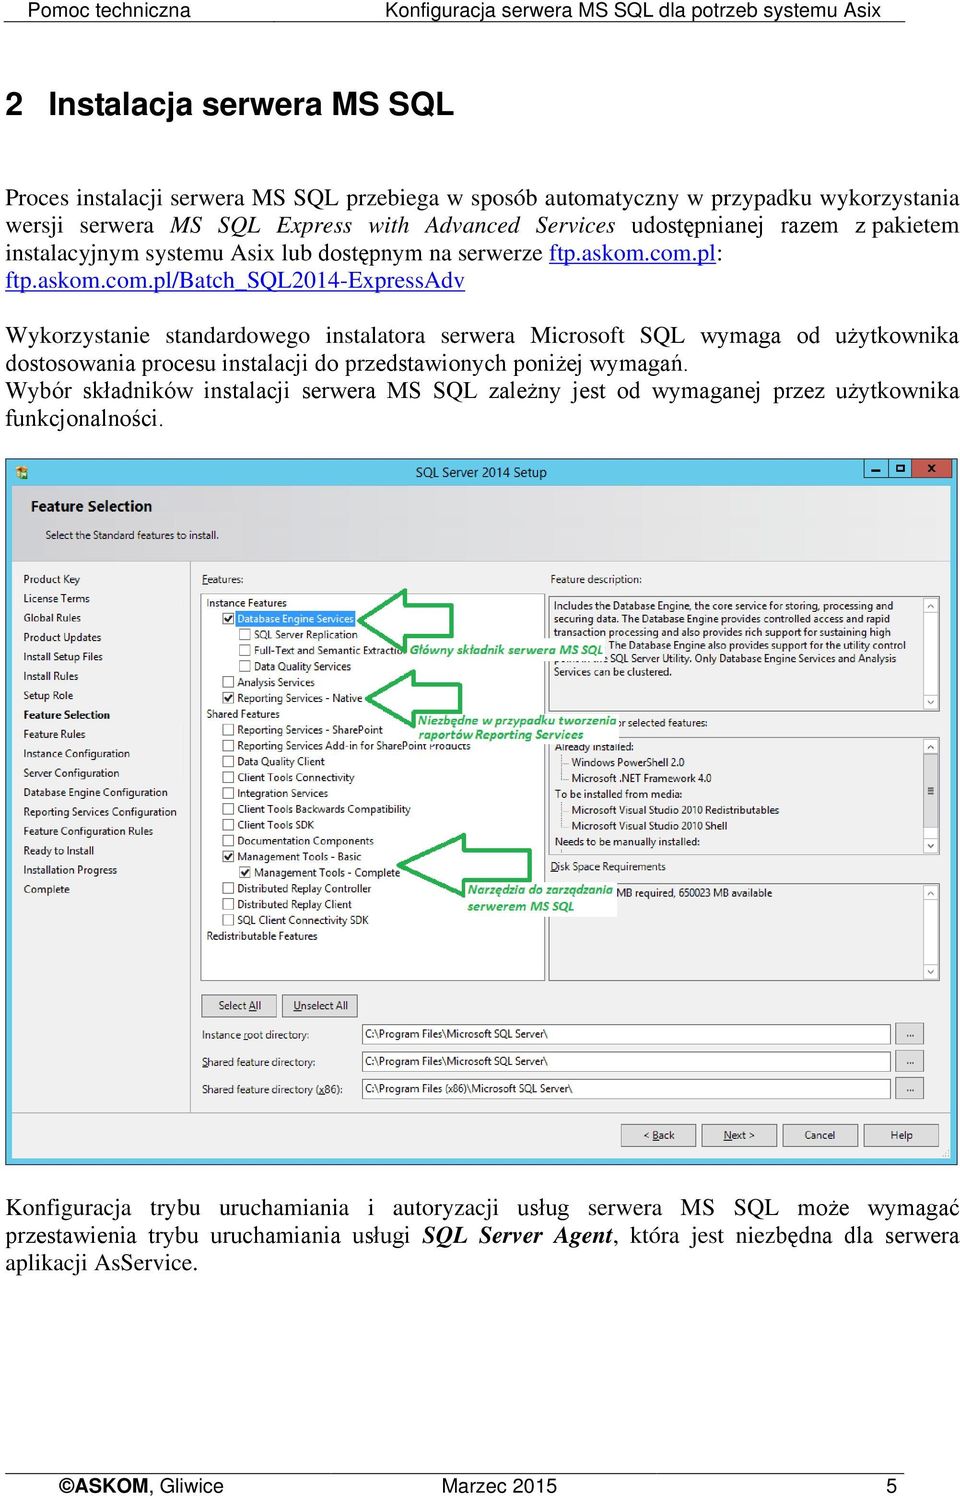 pl: ftp.askom.com.pl/batch_sql2014-expressadv Wykorzystanie standardowego instalatora serwera Microsoft SQL wymaga od użytkownika dostosowania procesu instalacji do przedstawionych poniżej wymagań.